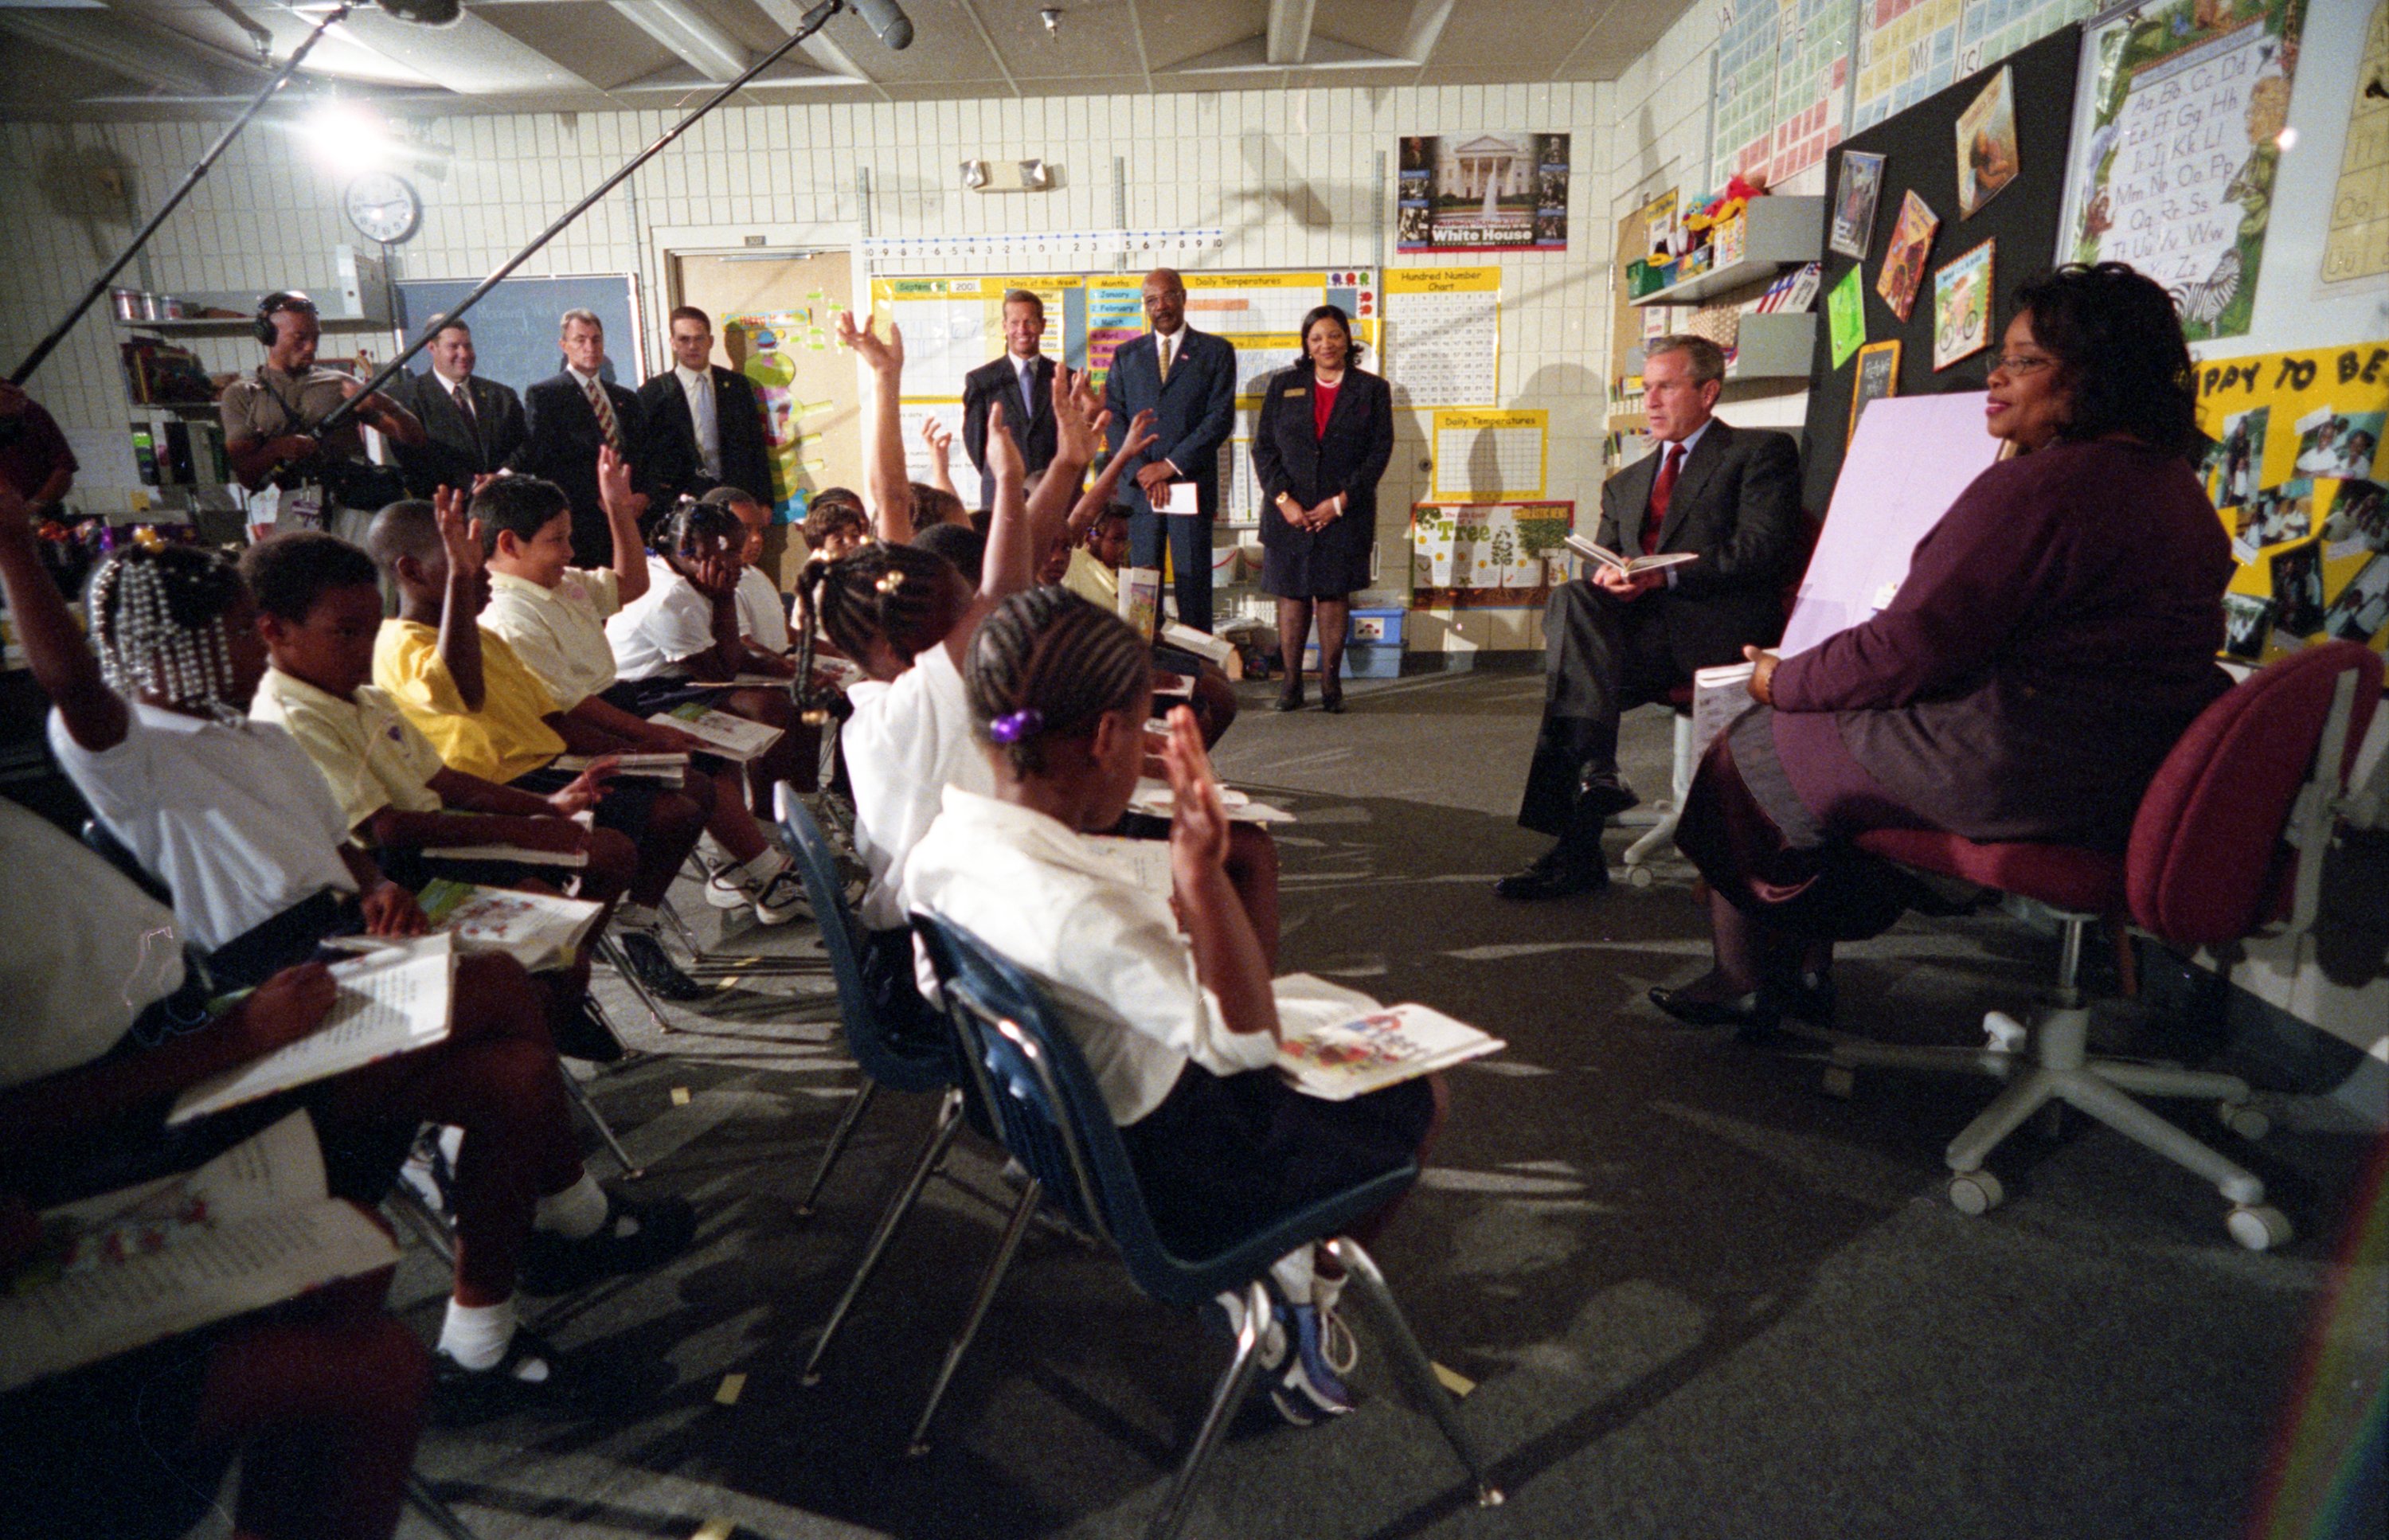 Класс Букеровской школы поднял руки вверх, а президент Буш сидит перед ними.